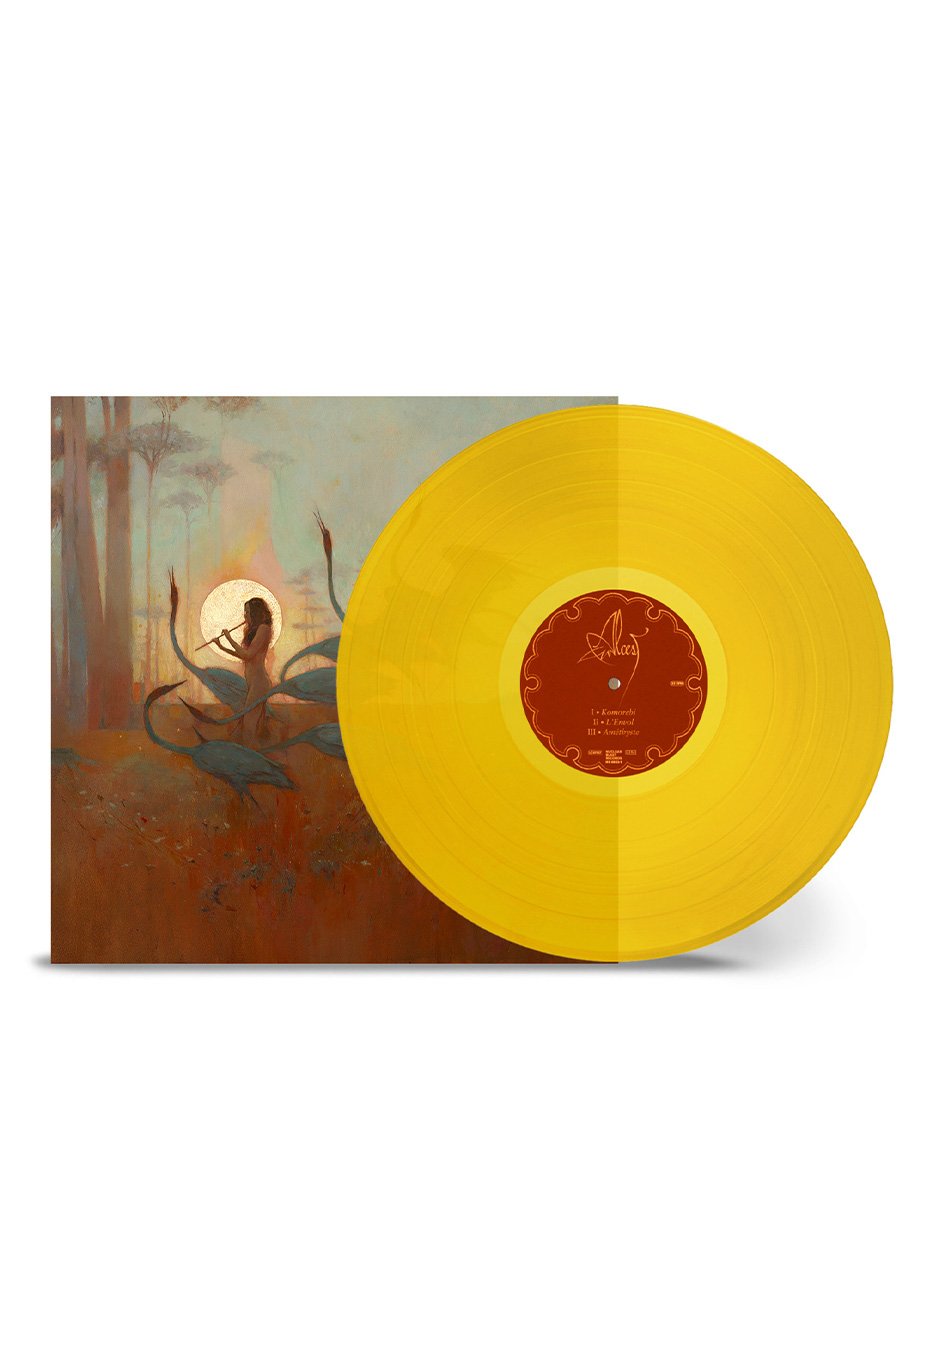 Alcest - Les Chants De L'Aurore Ltd. Transparent Yellow - Colored Vinyl